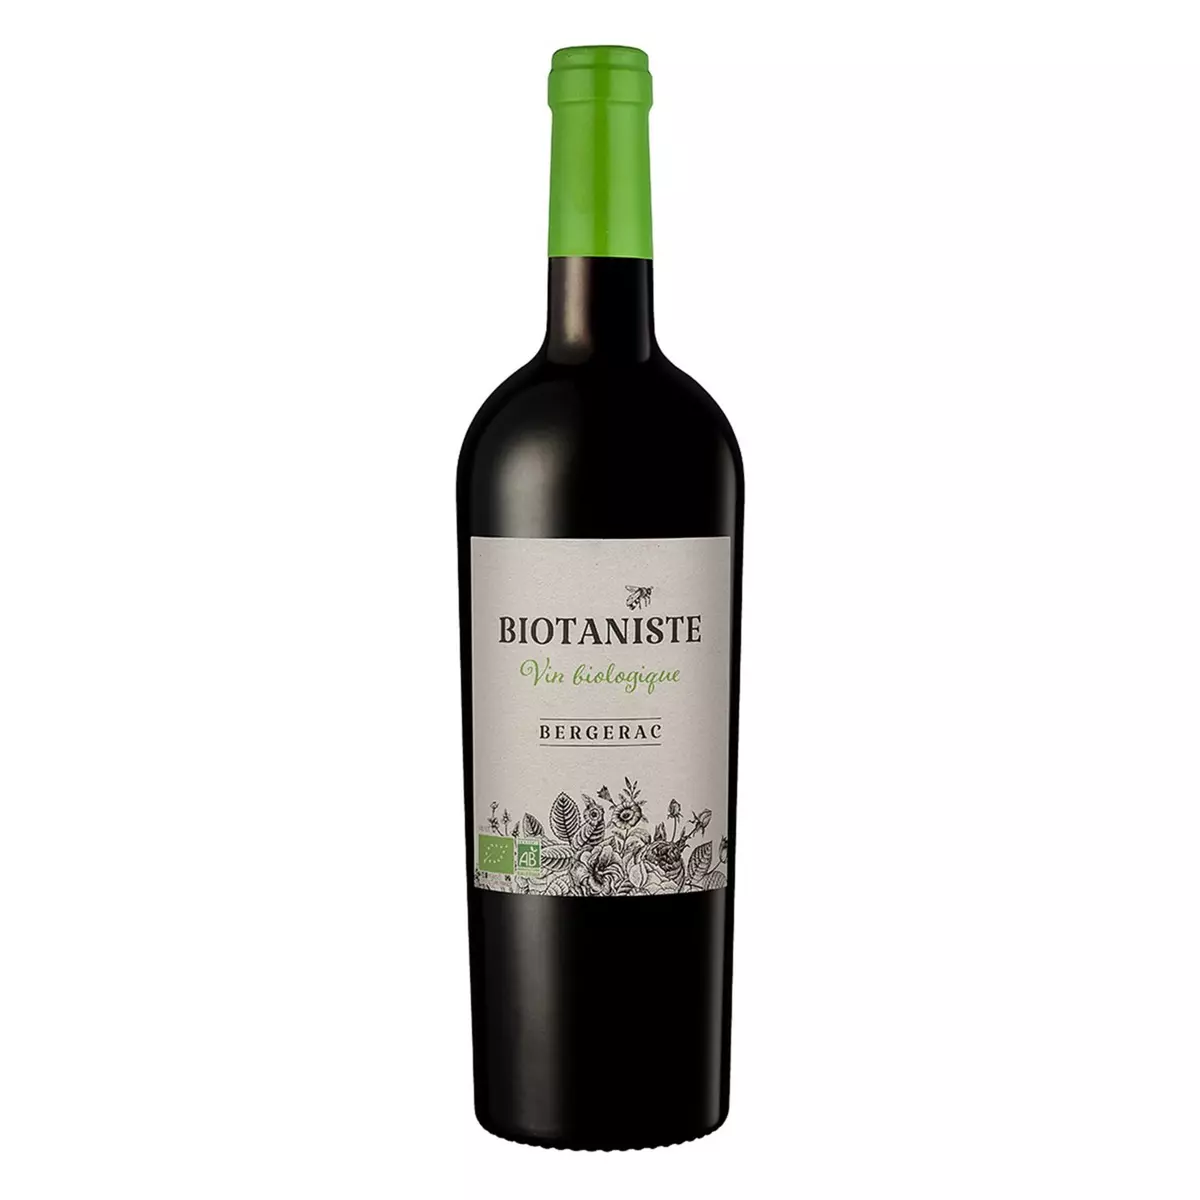 Vin rouge AOP Bergerac Biotaniste bio 2020 75cl